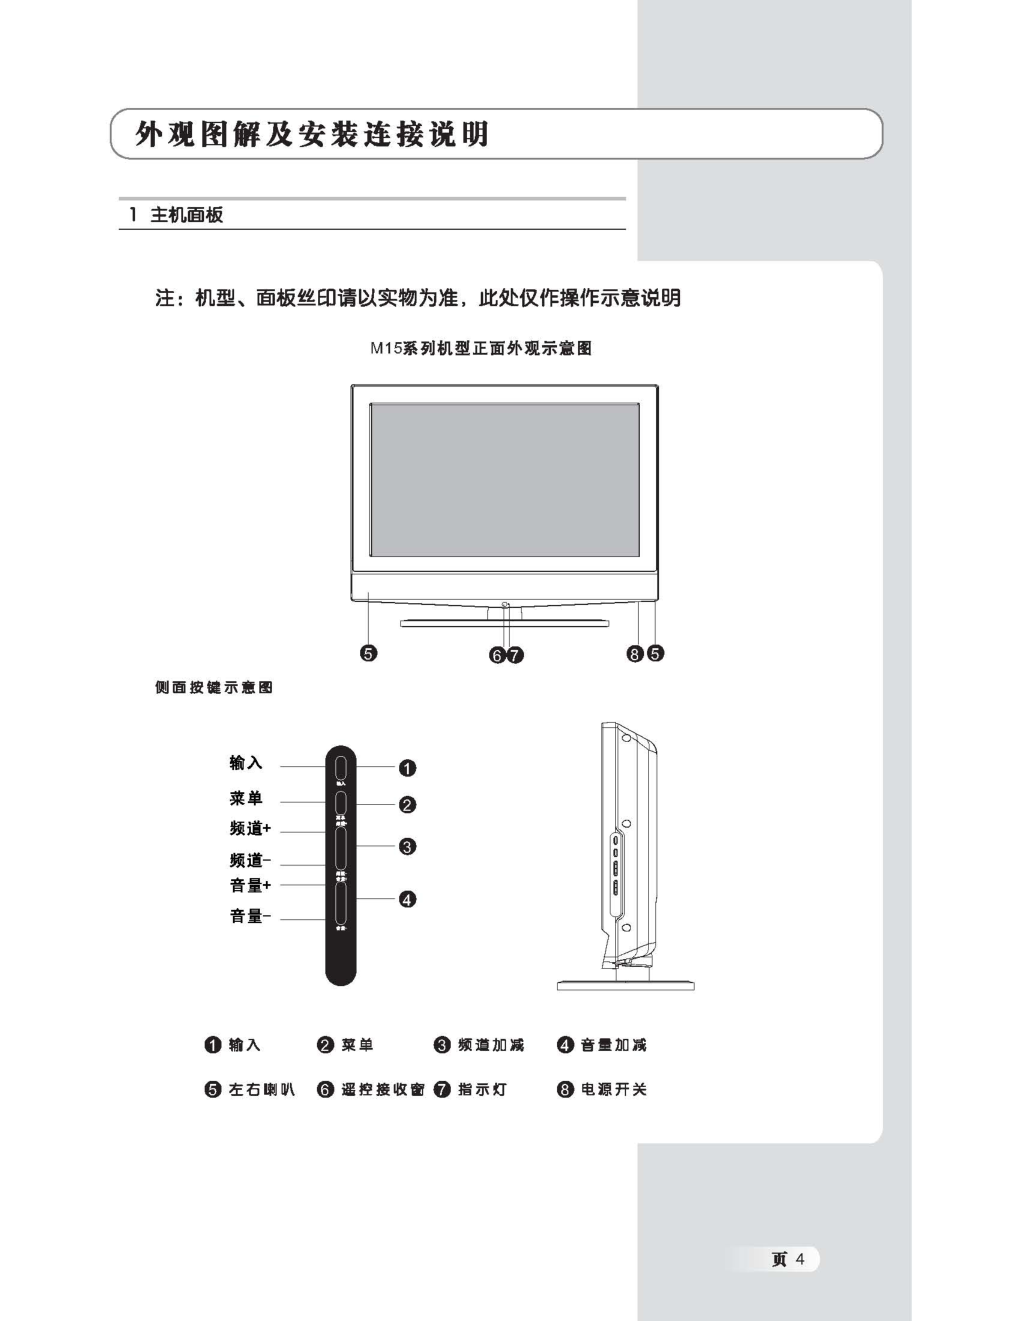 TCL王牌LCD26M15液晶彩电使用说明书-4